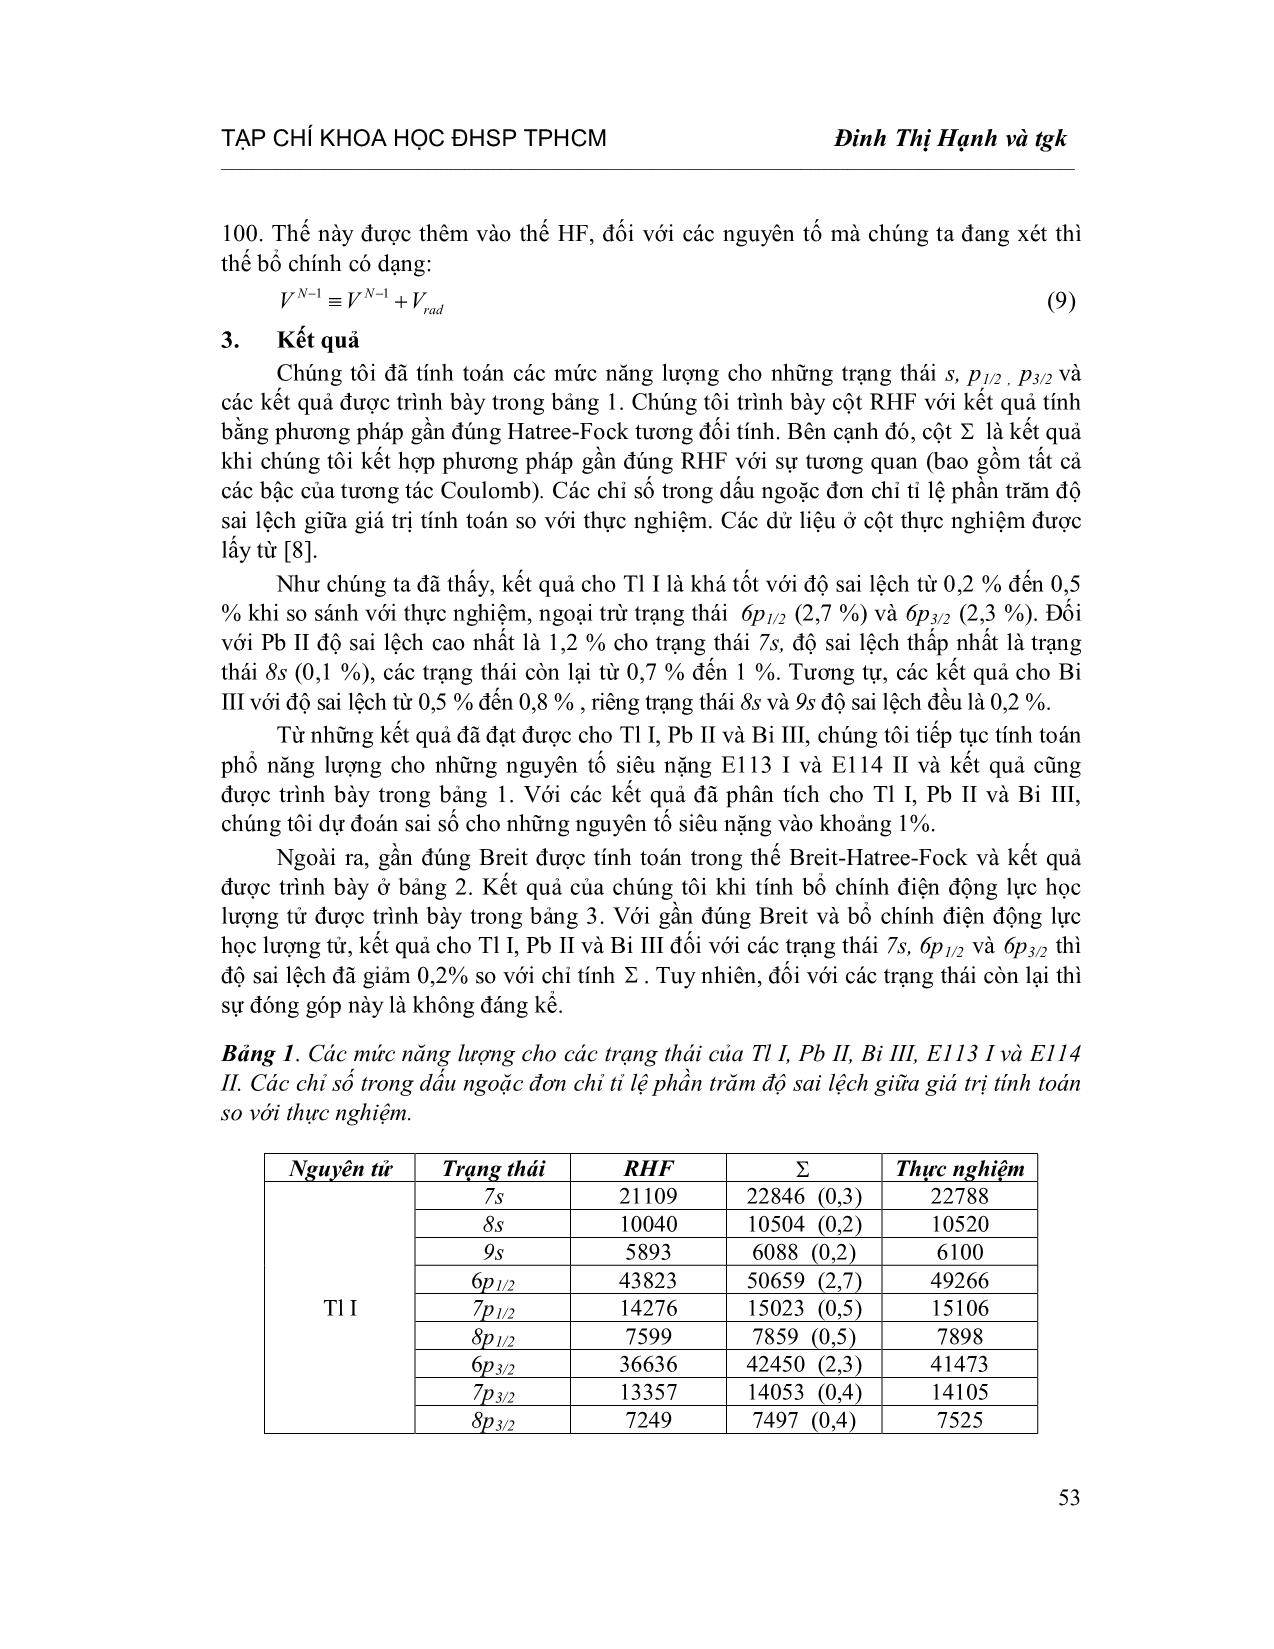 Tính toán phổ năng lượng cho nguyên tố siêu nặng E113 I VÀ E114 II trang 4